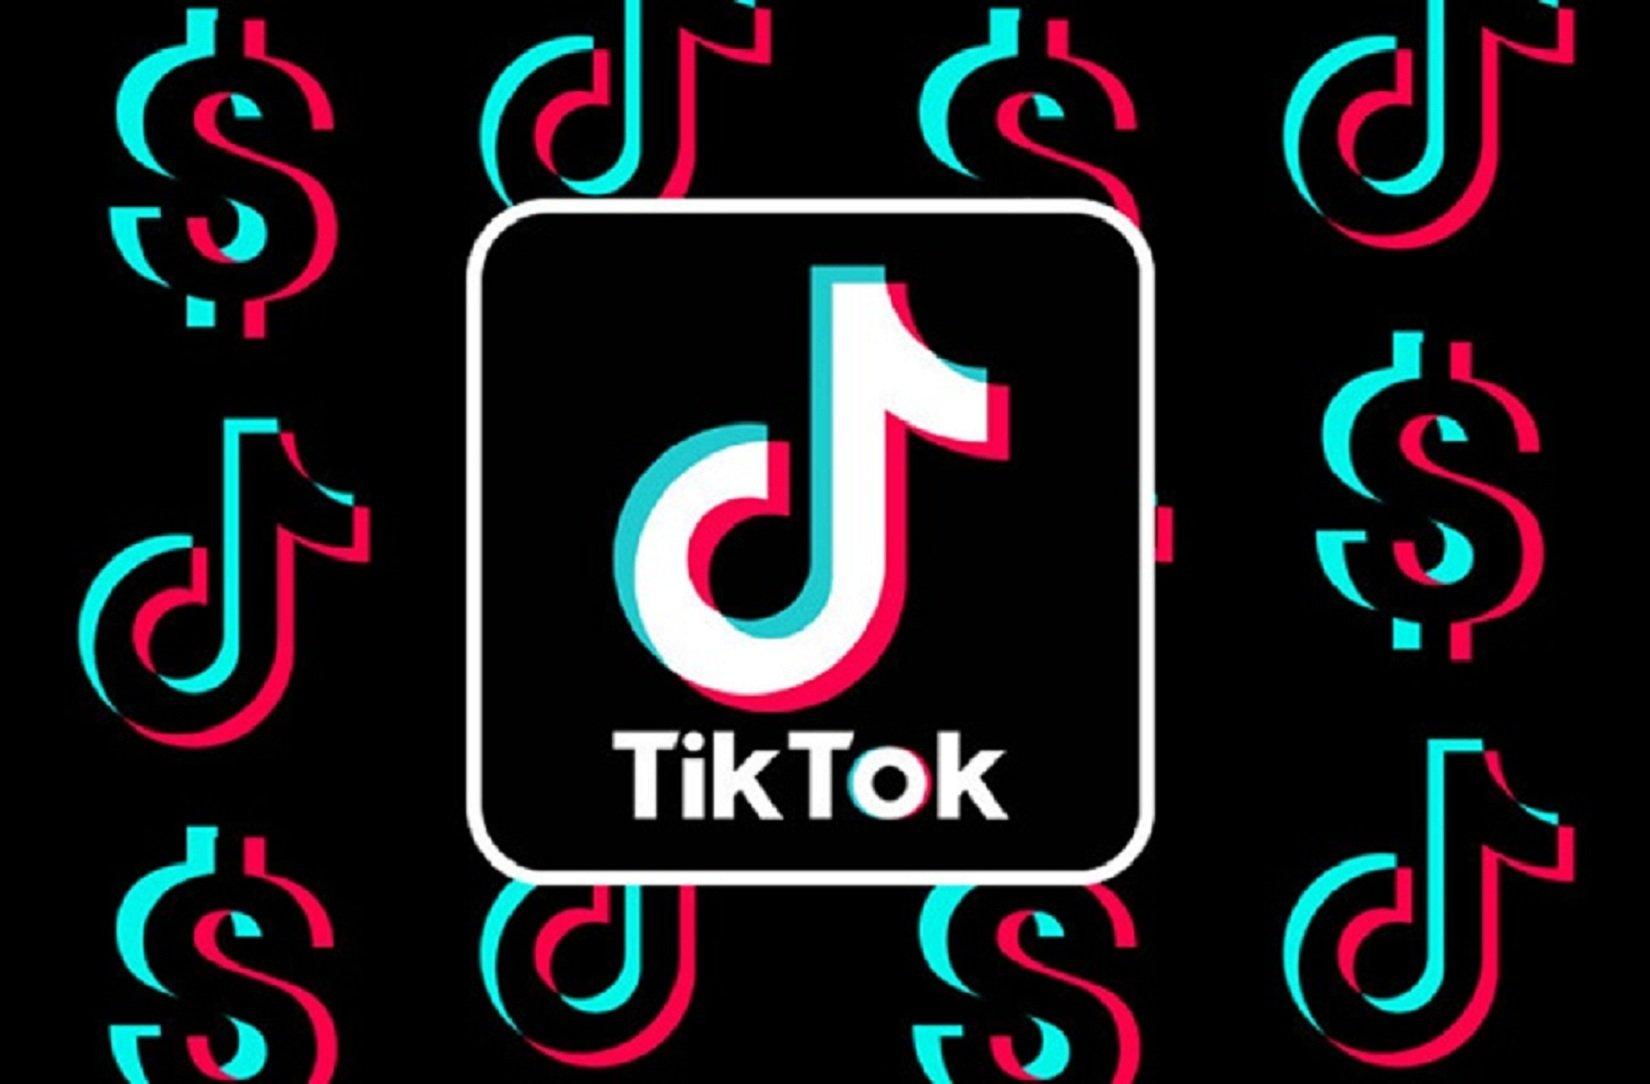 Nhạc TikTok: Hòa quyện vào nhịp đập của nhạc TikTok sôi động, bạn sẽ cảm thấy như đang vũ điệu say đắm. Tận hưởng những giai điệu vui tươi và phô diễn tài năng của bạn với những ca khúc hot nhất trên nền tảng này.